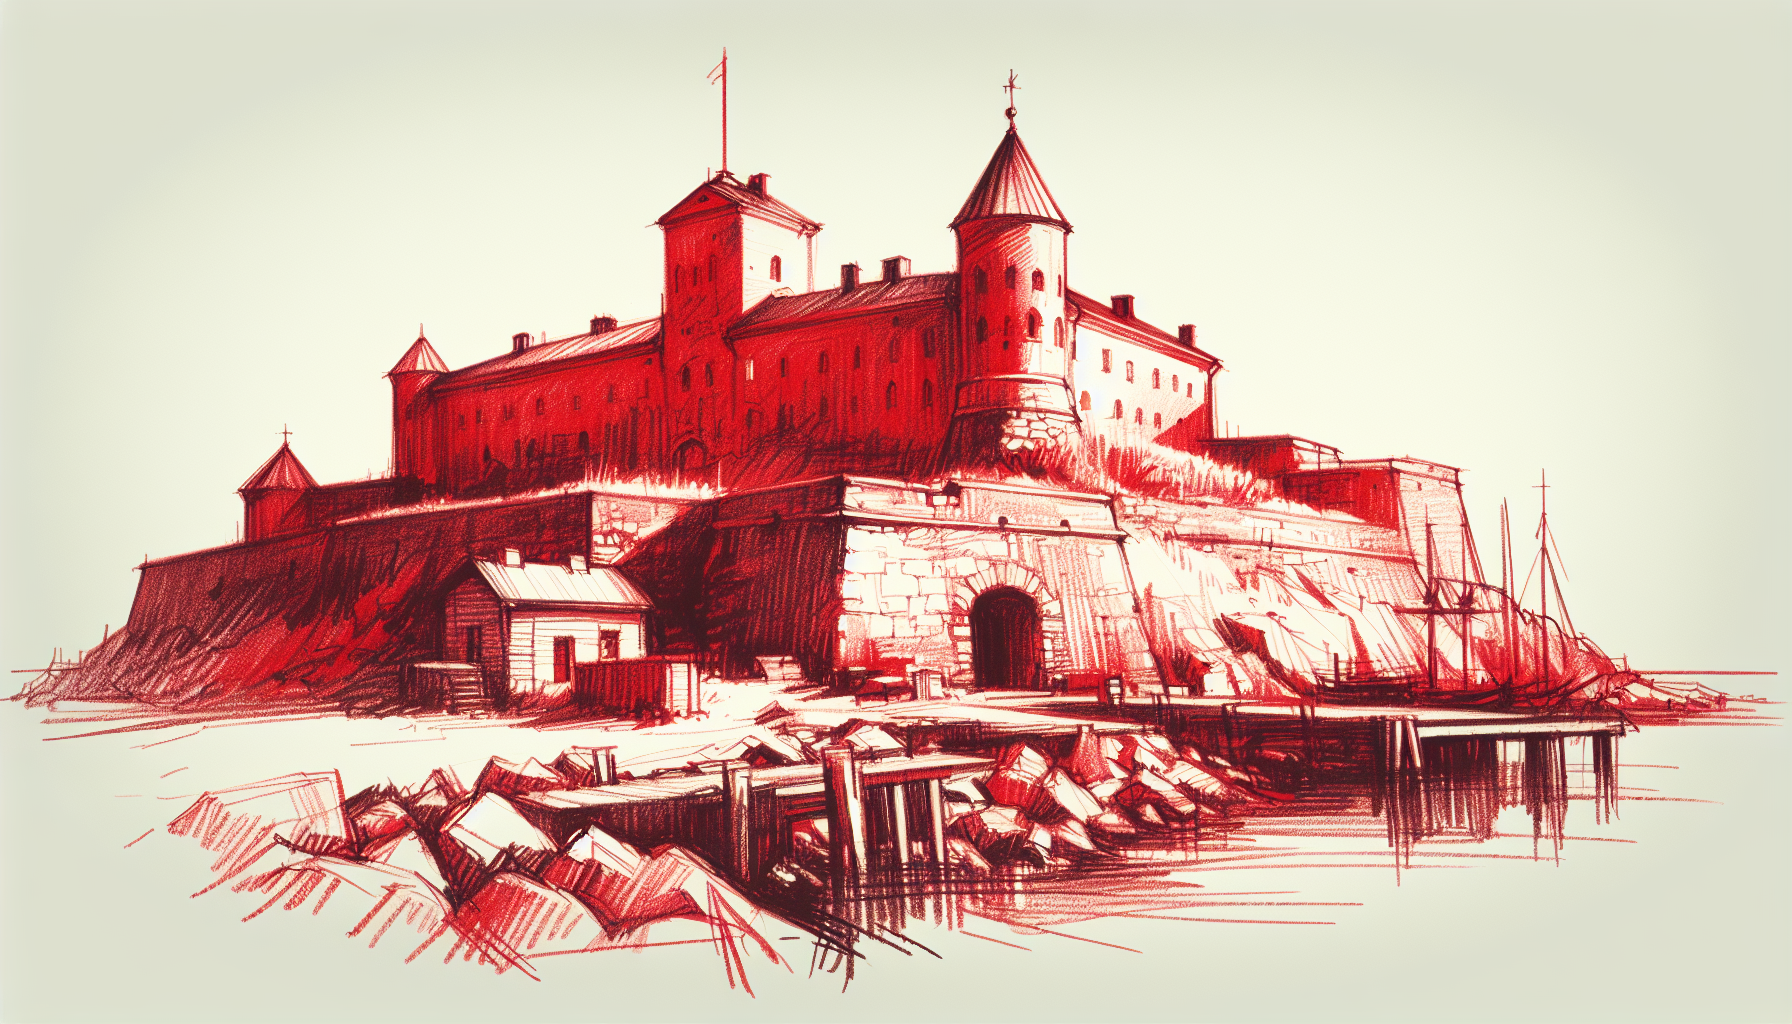 Suomenlinna Island Fortress